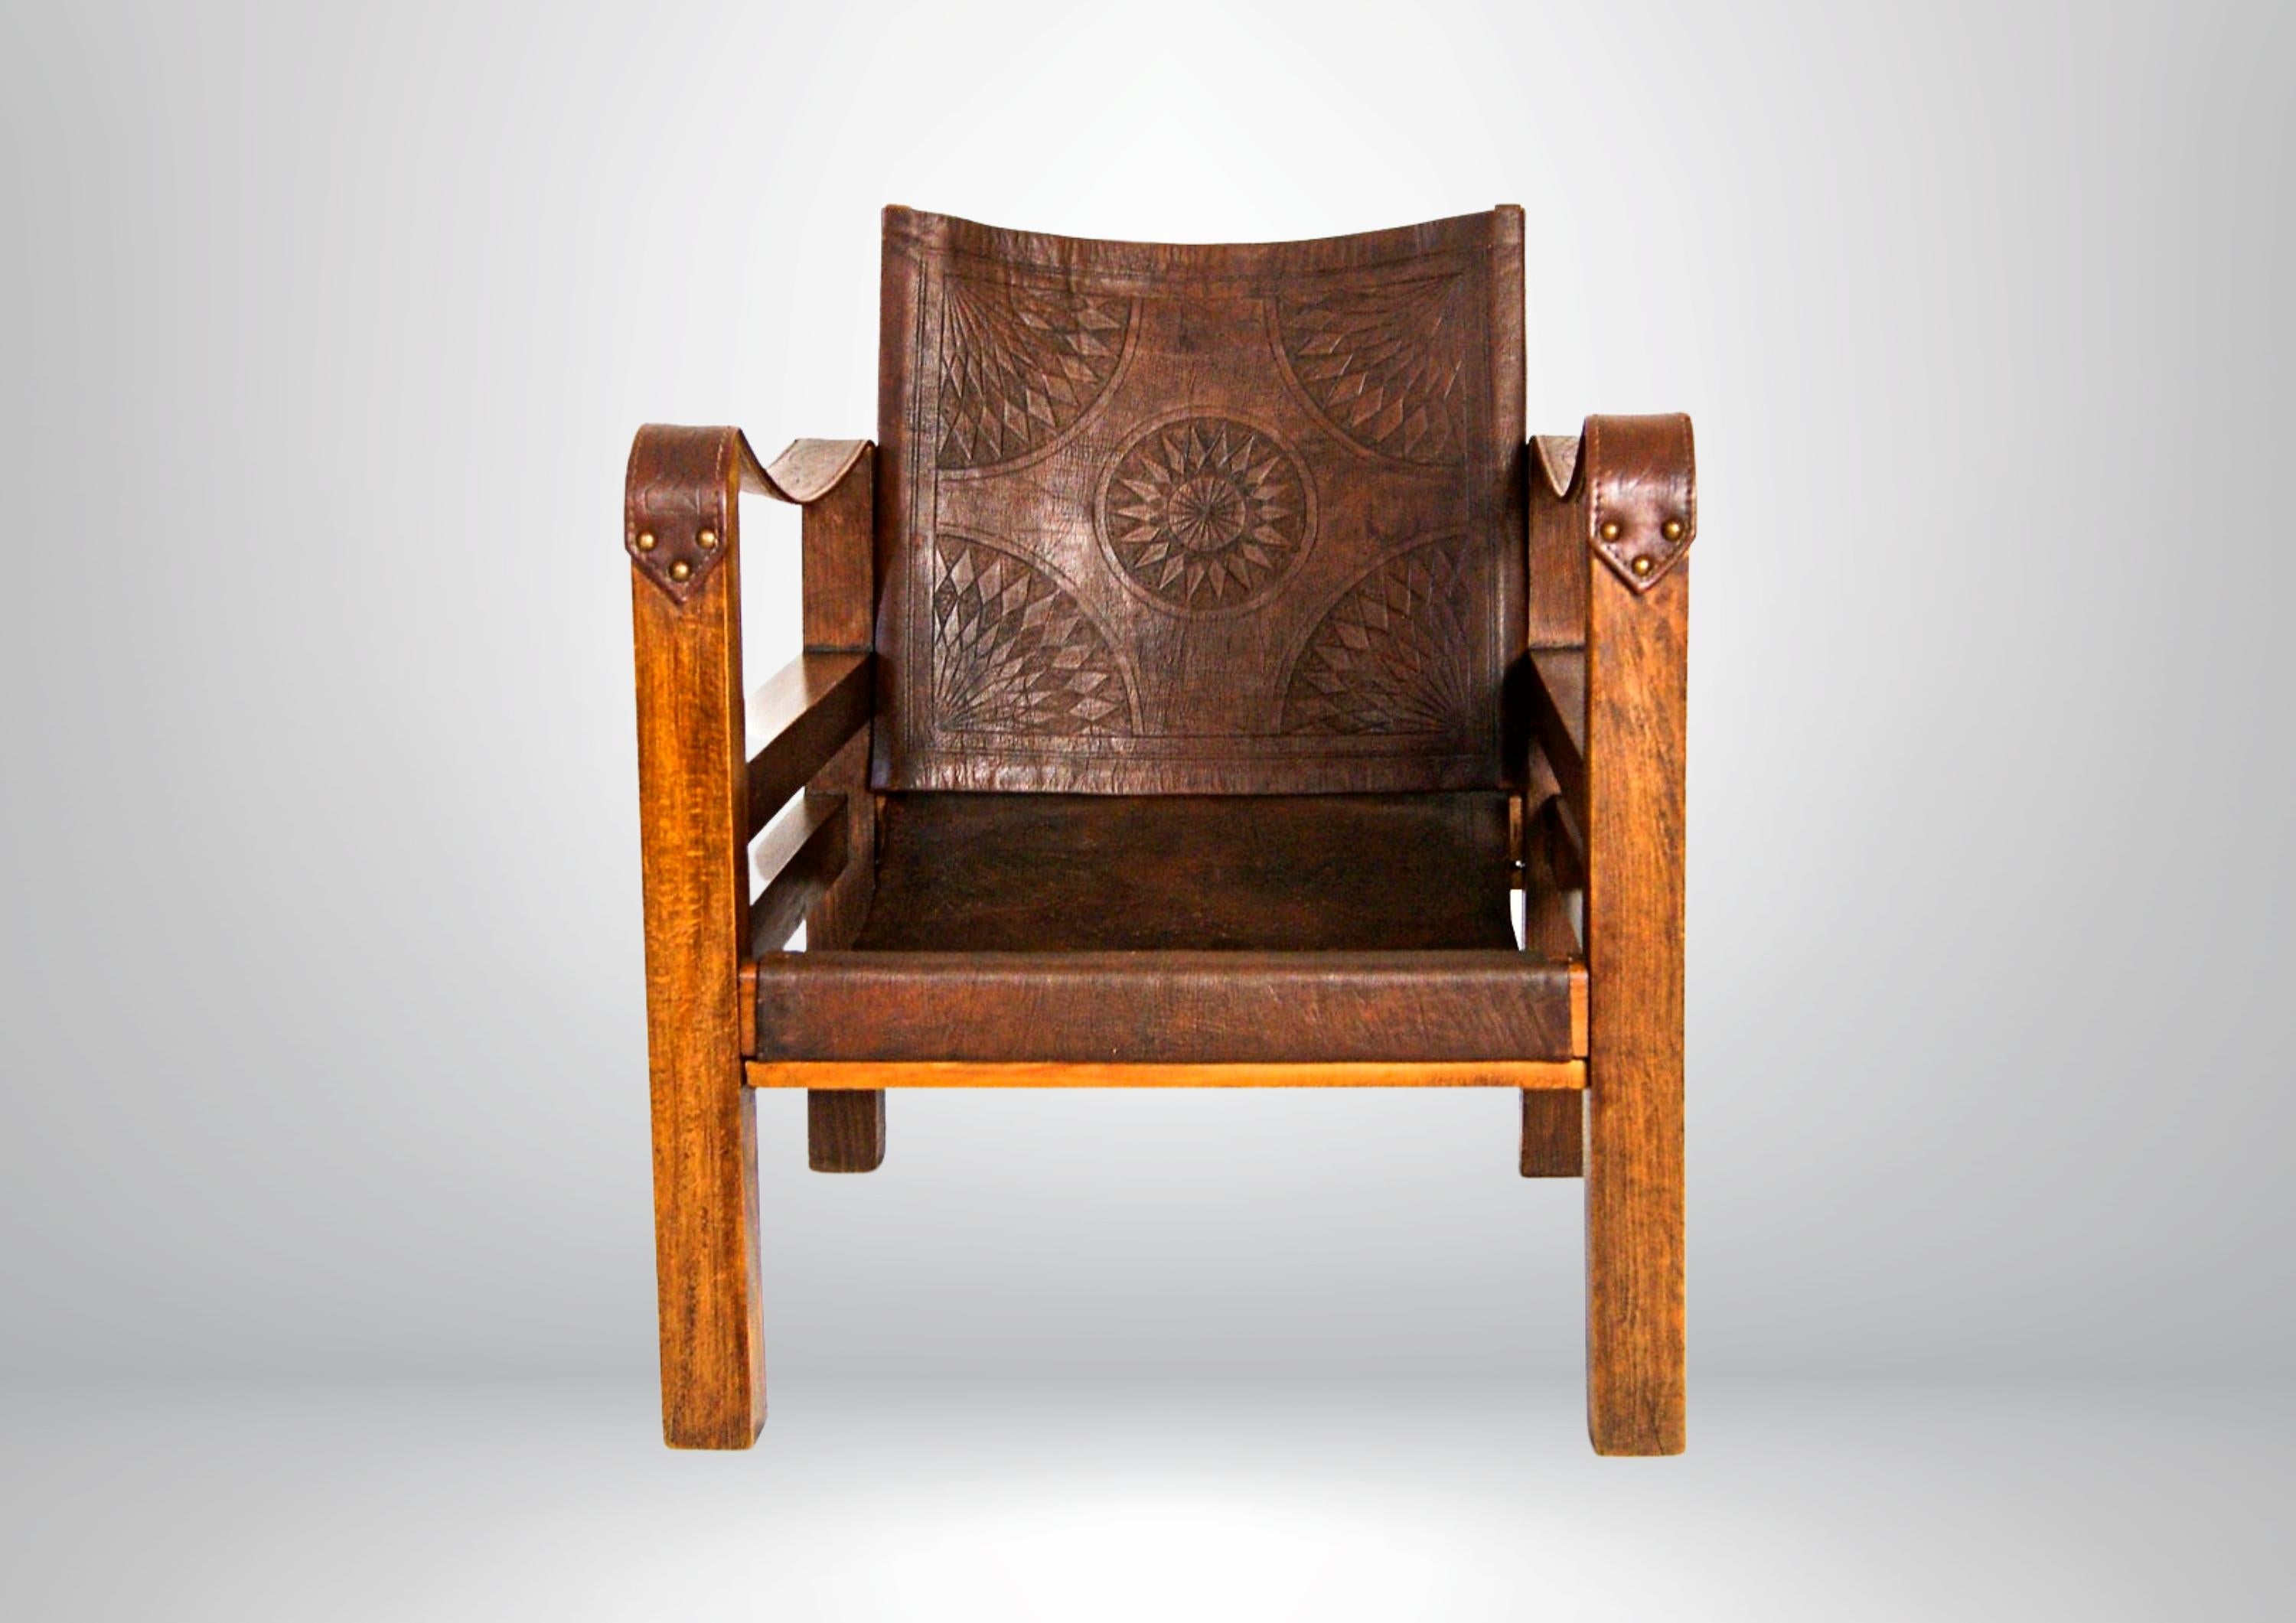 Seltenes Paar lederne Safari-Sessel aus der Mitte des Jahrhunderts.
Französisches Fabrikat, ca. 1940er Jahre.
Wird hier im Originalzustand angeboten.
Dunkelbraunes Leder, kunstvoll mit antiken Symbolen versehen, ruht auf einem massiven